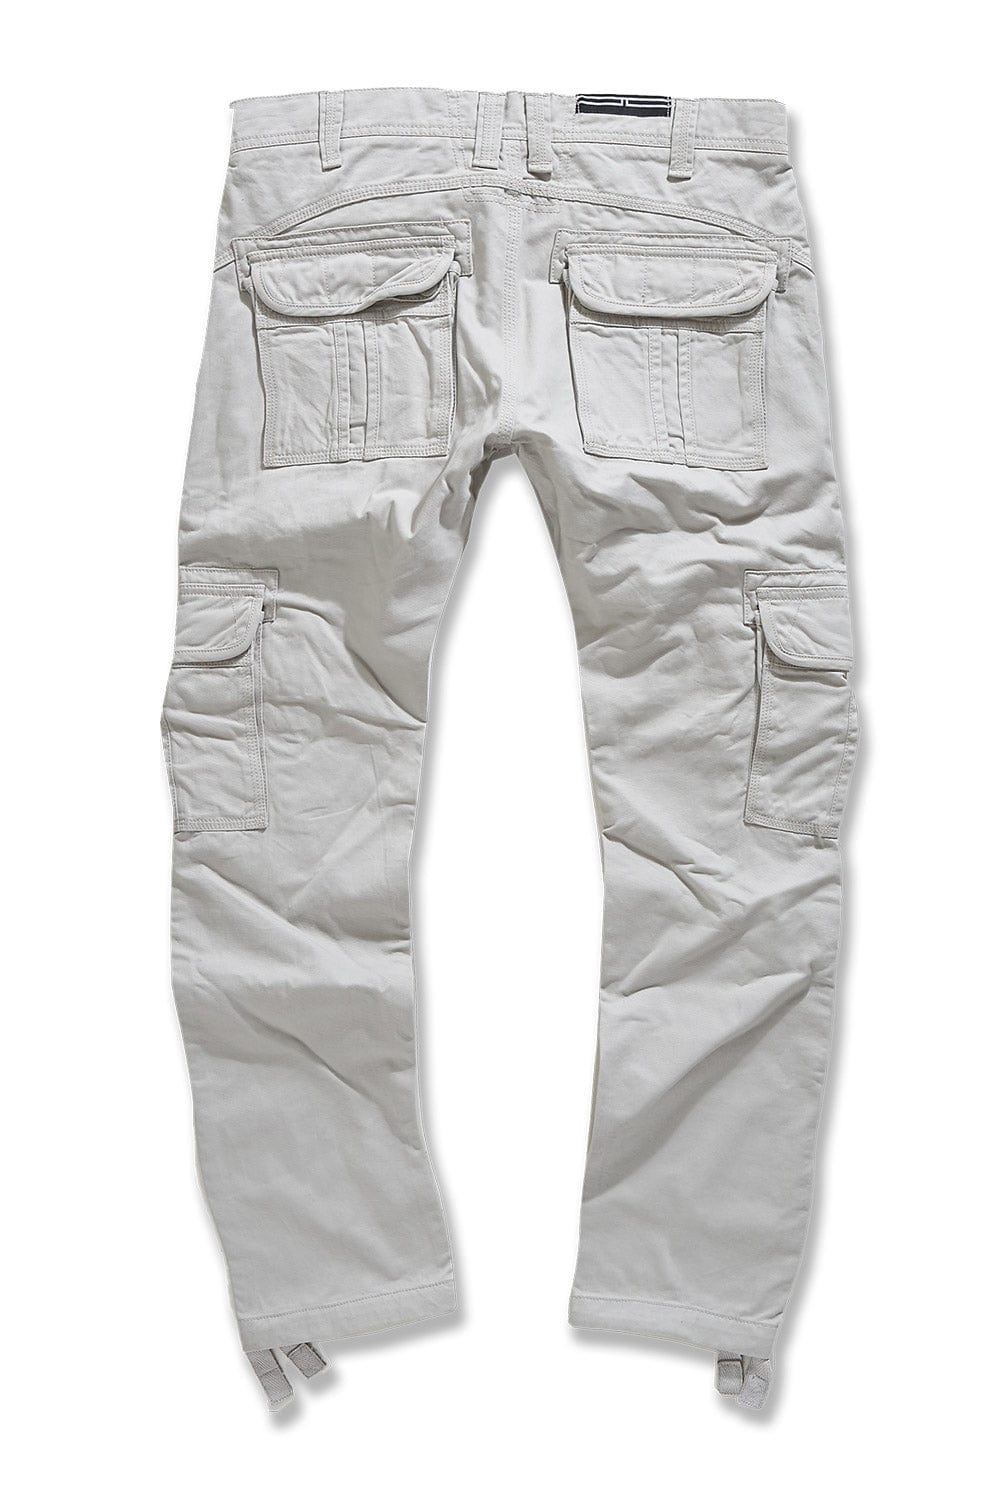 Xavier - OG Cargo Pants (Cement)